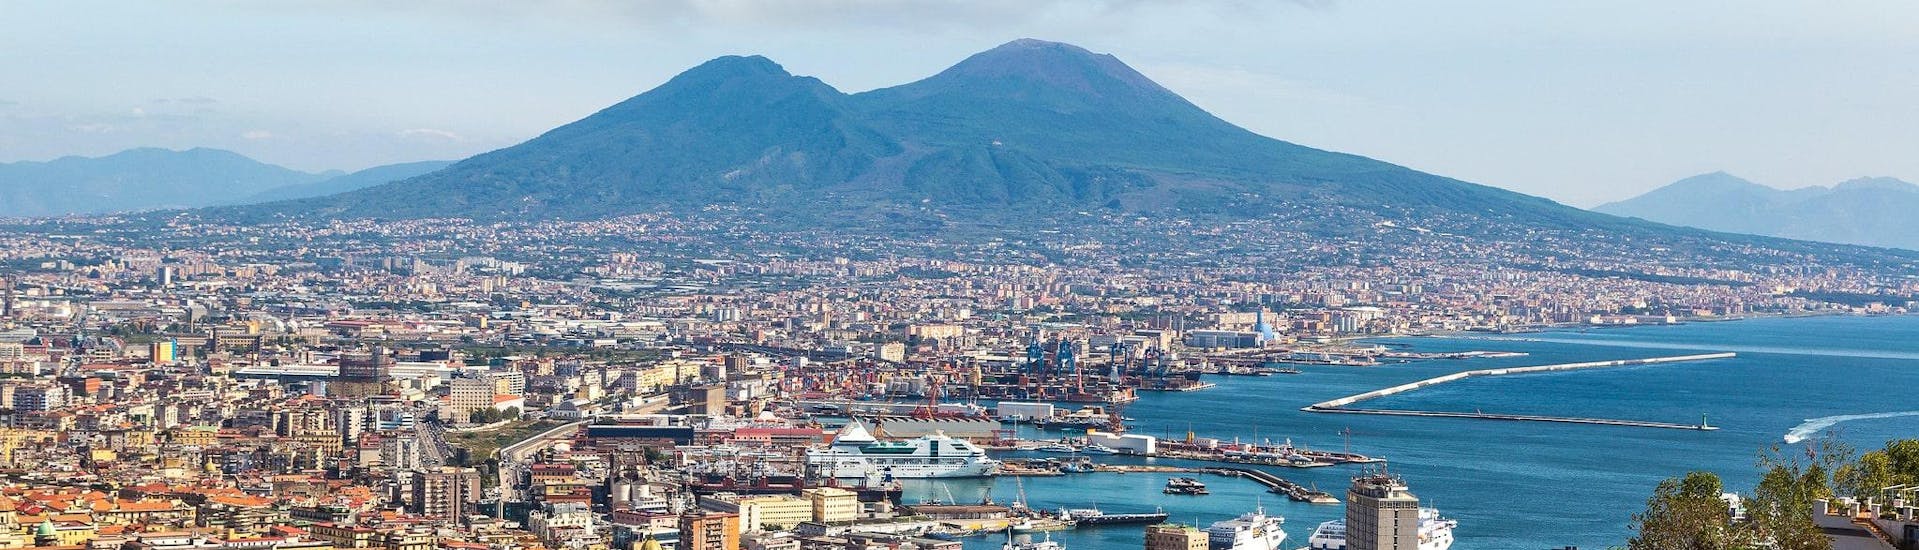 Vista della città di Napoli con il Vesuvio sullo sfondo, da dove partono molte gite in barca per Capri e la Costiera Amalfitana.